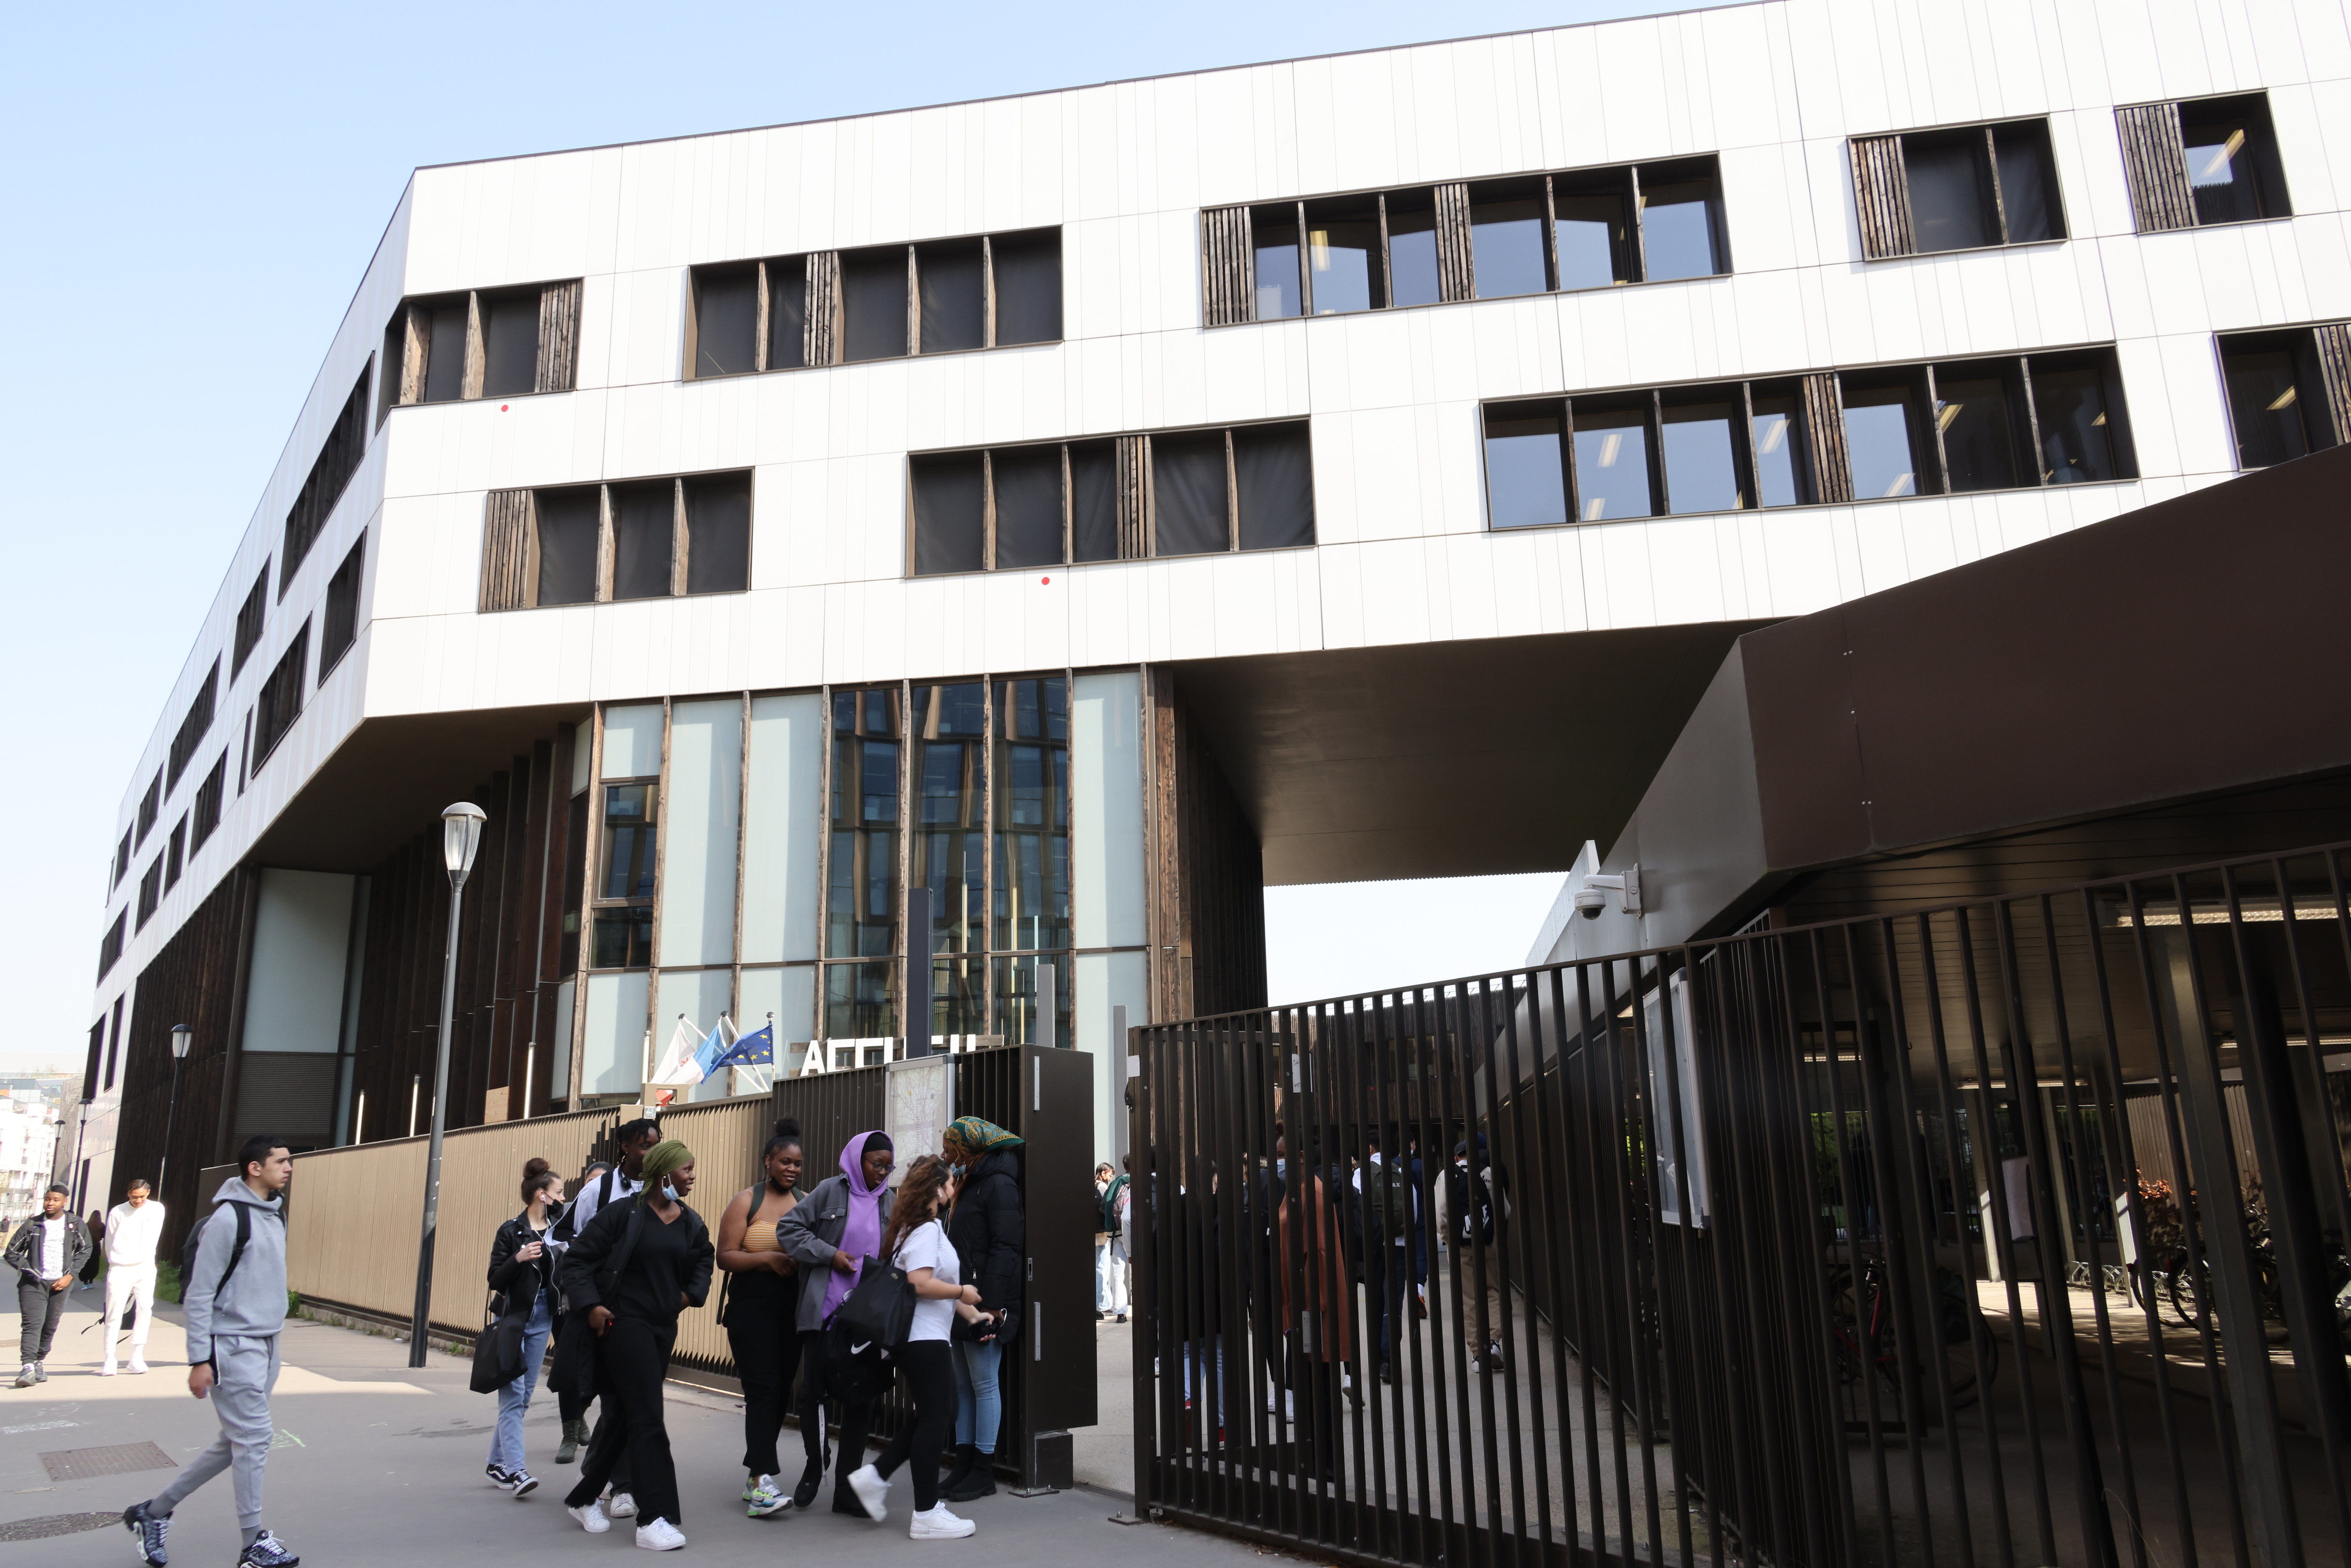 Saint-Denis, avril 2022. Le lycée, qui a ouvert ses portes en 2017, ne porte toujours pas officiellement le nom d'Angela Davis. LP/Delphine Goldsztejn